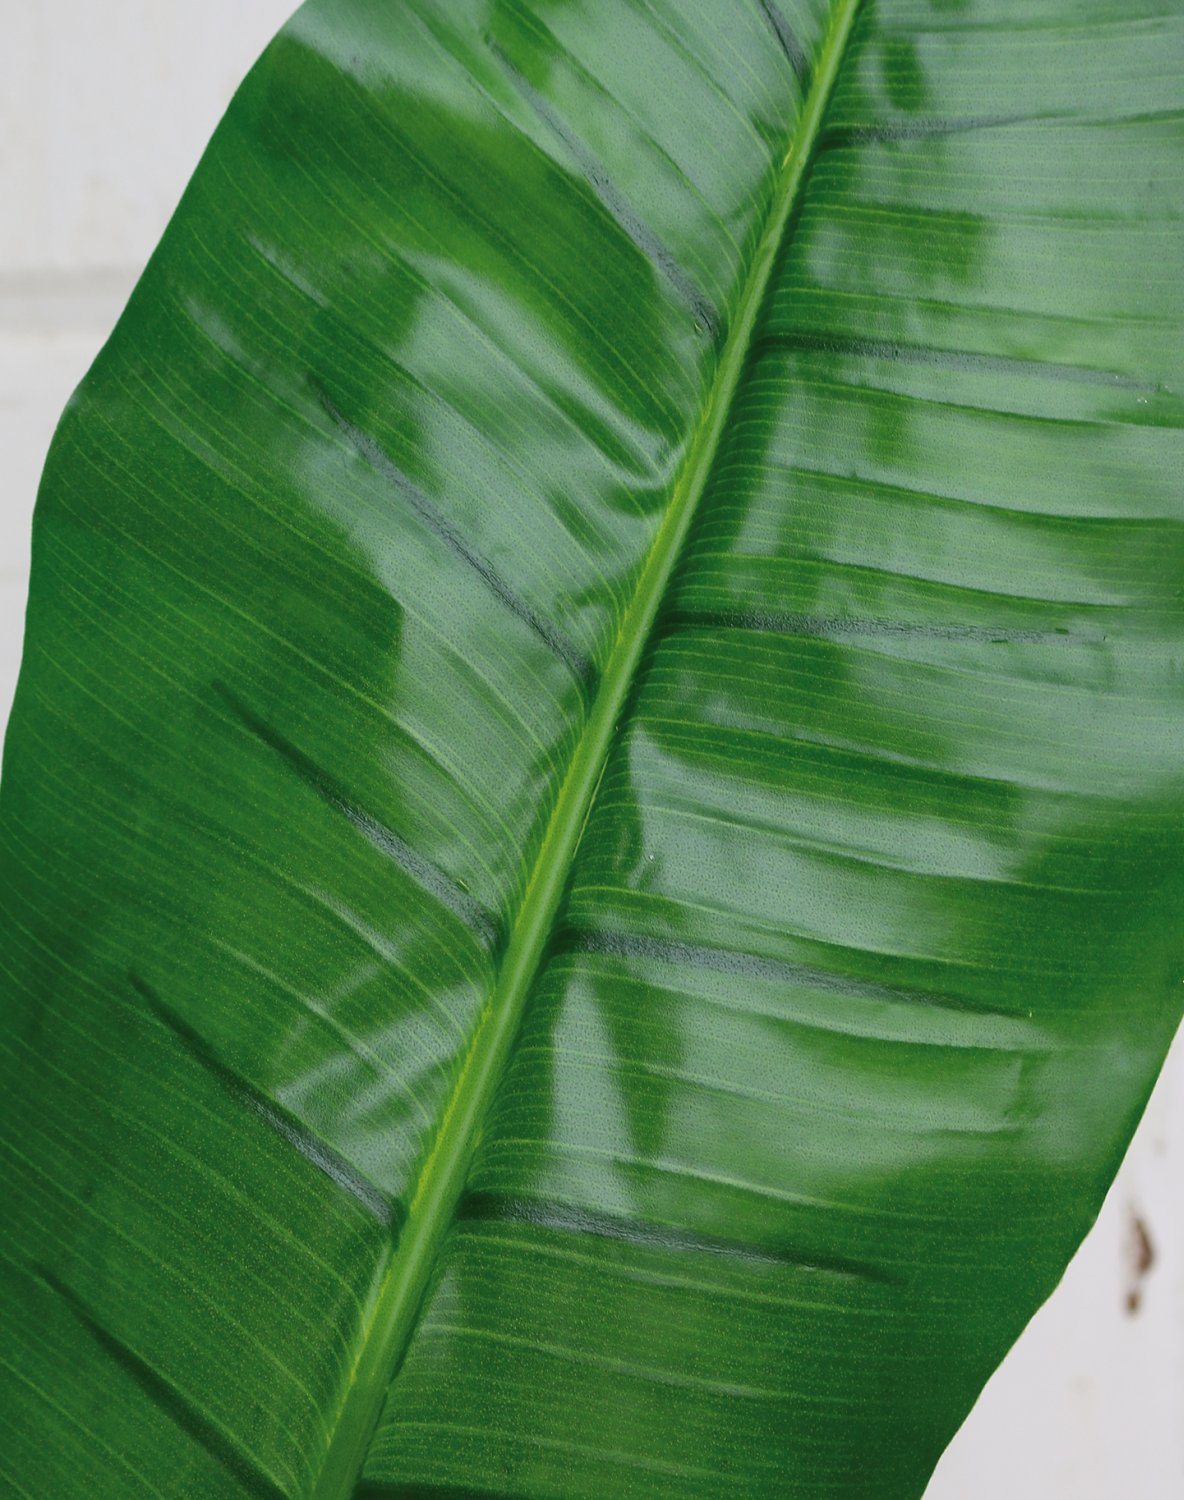 Foglia di banano artificiale, 129 cm (foglia 57 cm), verde